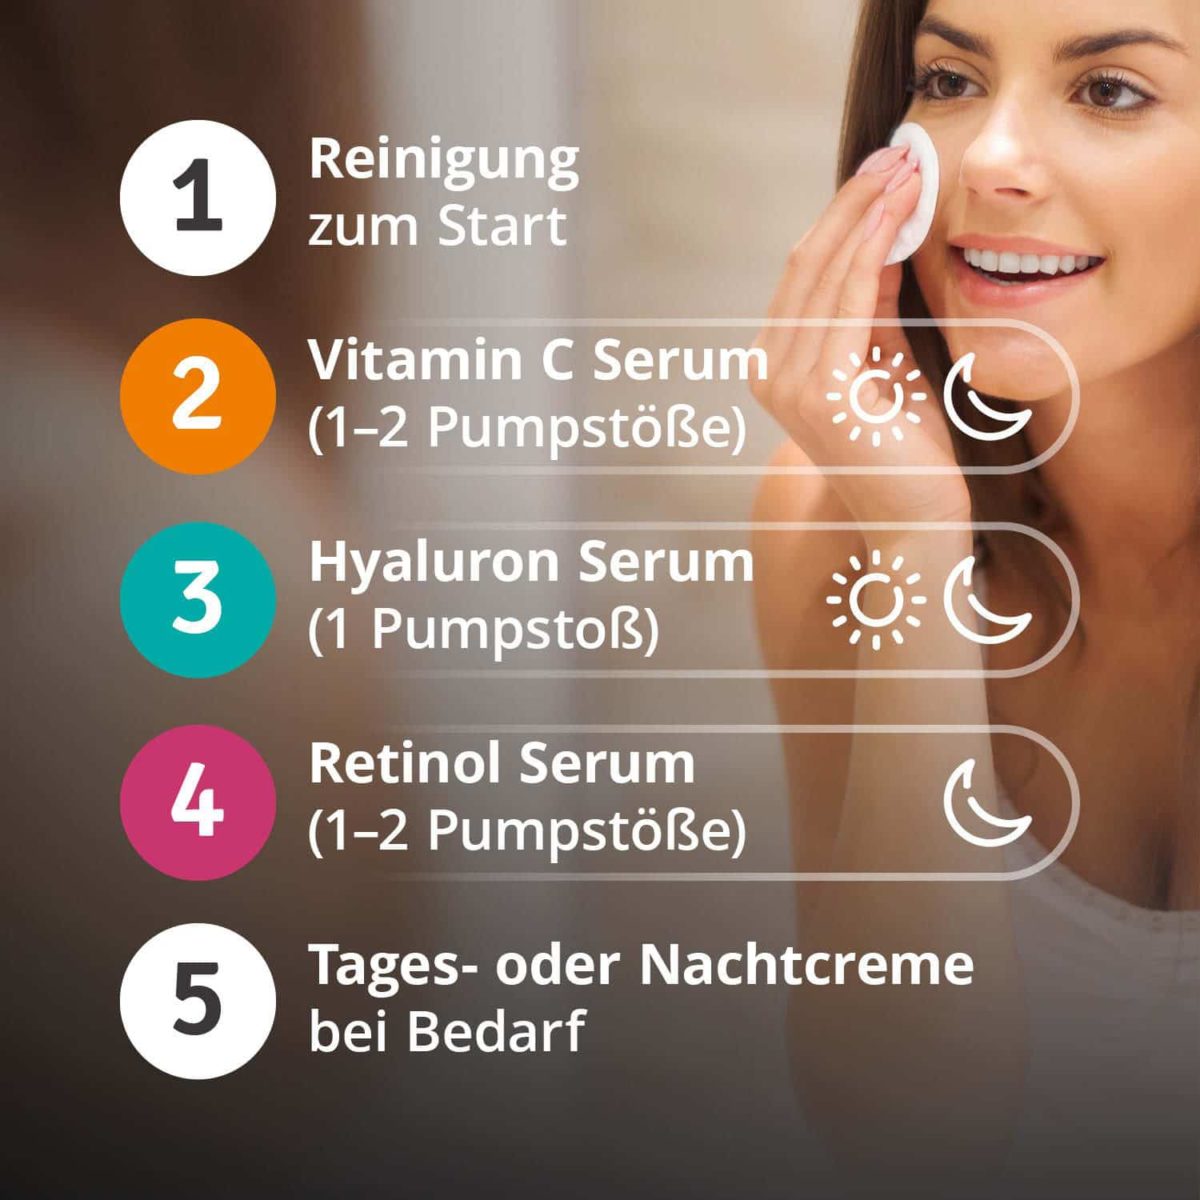 Serum Trilogie – Beauty Set mit Retinolserum Hyaluronserum Vitamin C Serum und Gratis Mizellenwasser Anti-Aging8